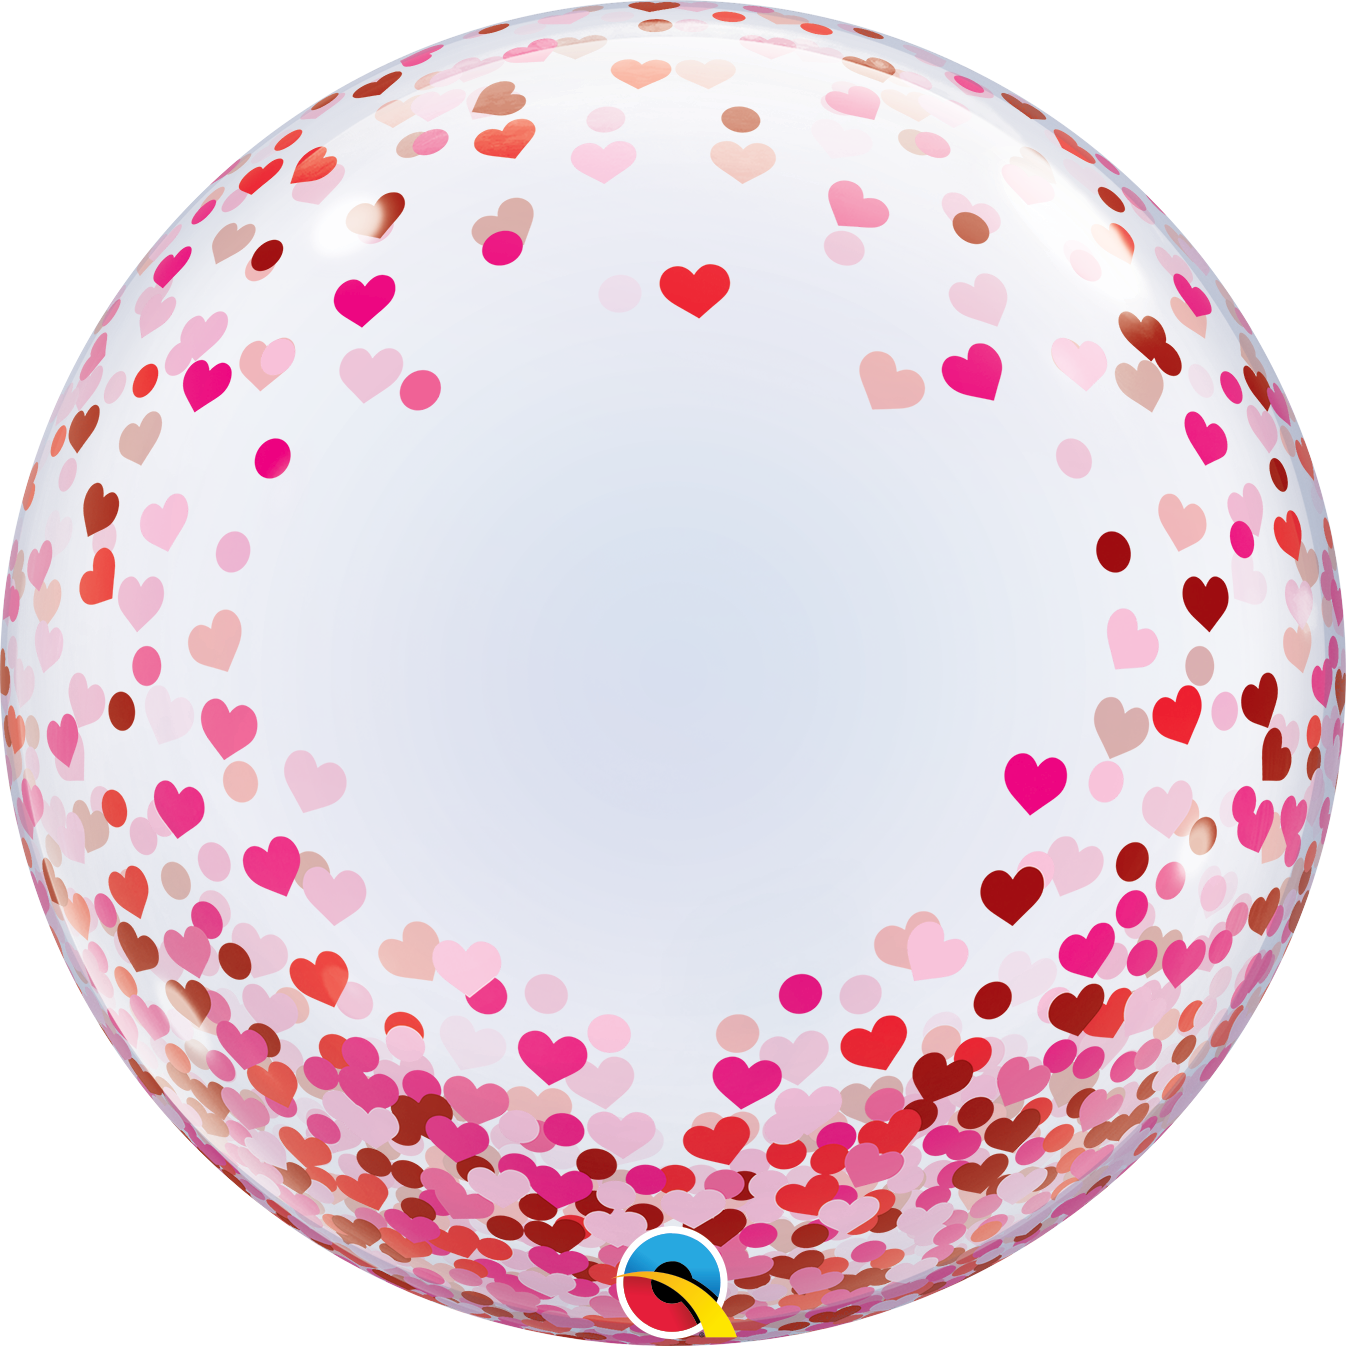 24" Valentine's Red & Pink Confetti Hearts Qualatex Bubble Balloon